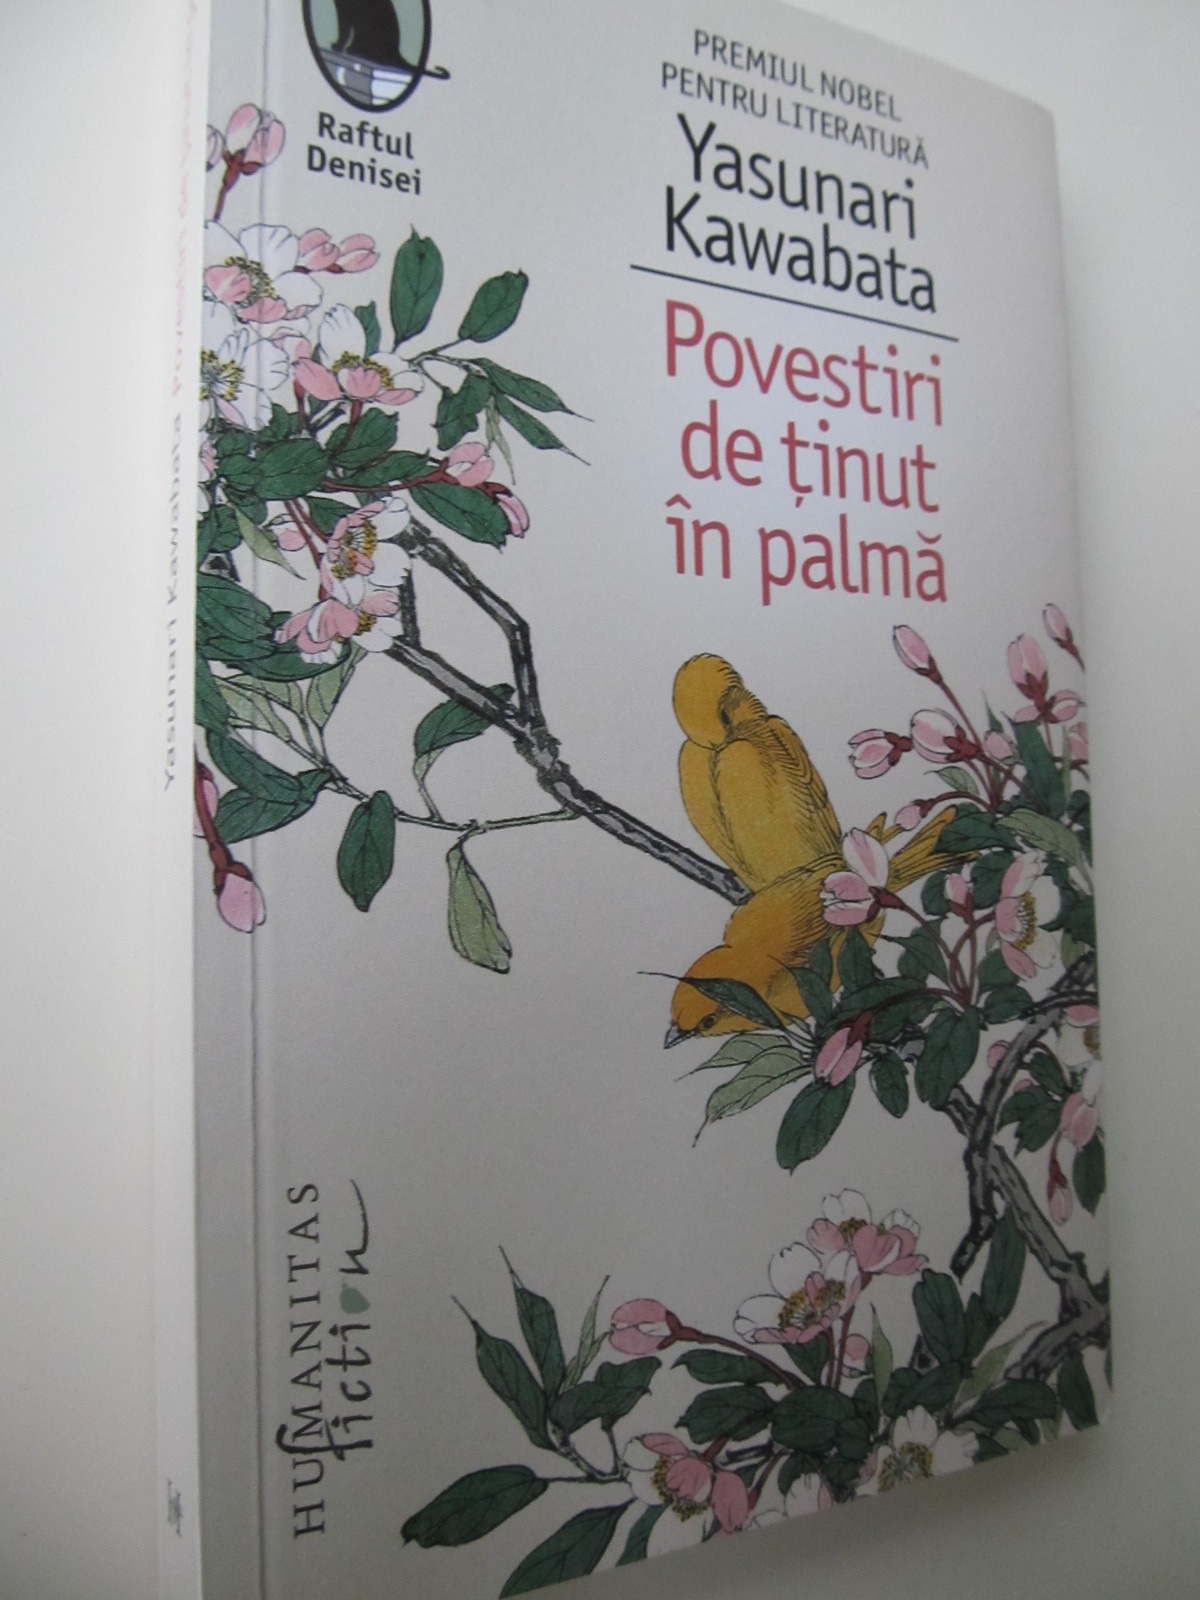 Povestiri de tinut in palma (premiu Nobel) - Yasunari Kawabata | Detalii carte